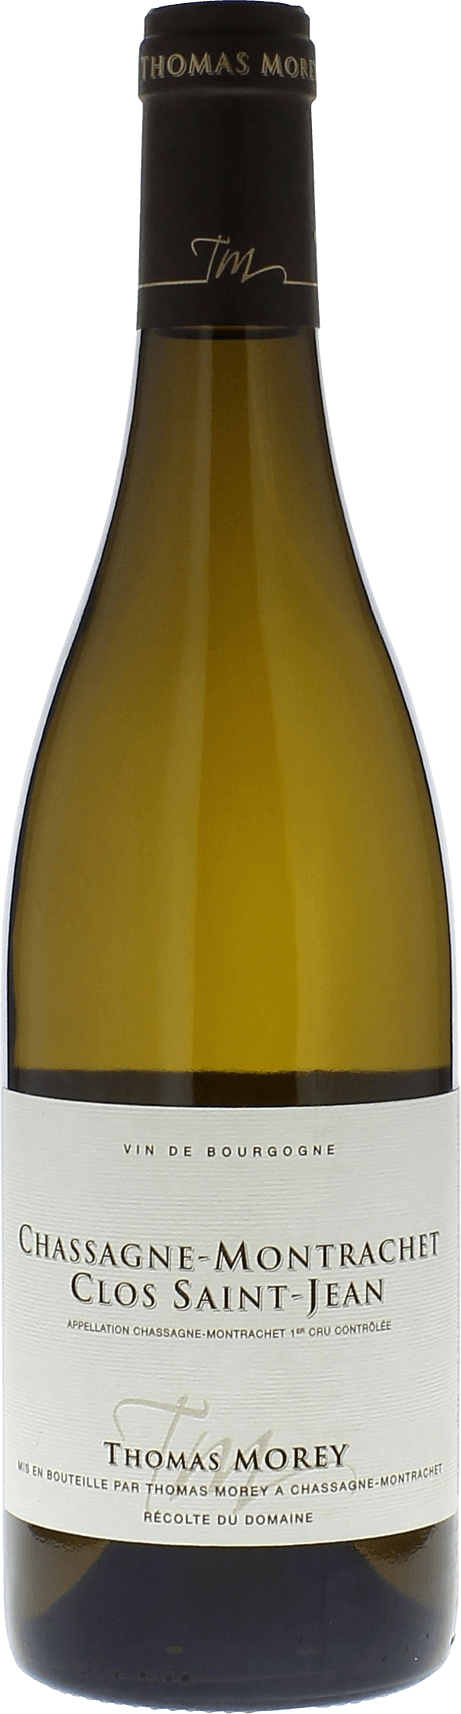 Chassagne montrachet 1er cru clos saint jean 2015 Domaine MOREY Thomas, Bourgogne blanc